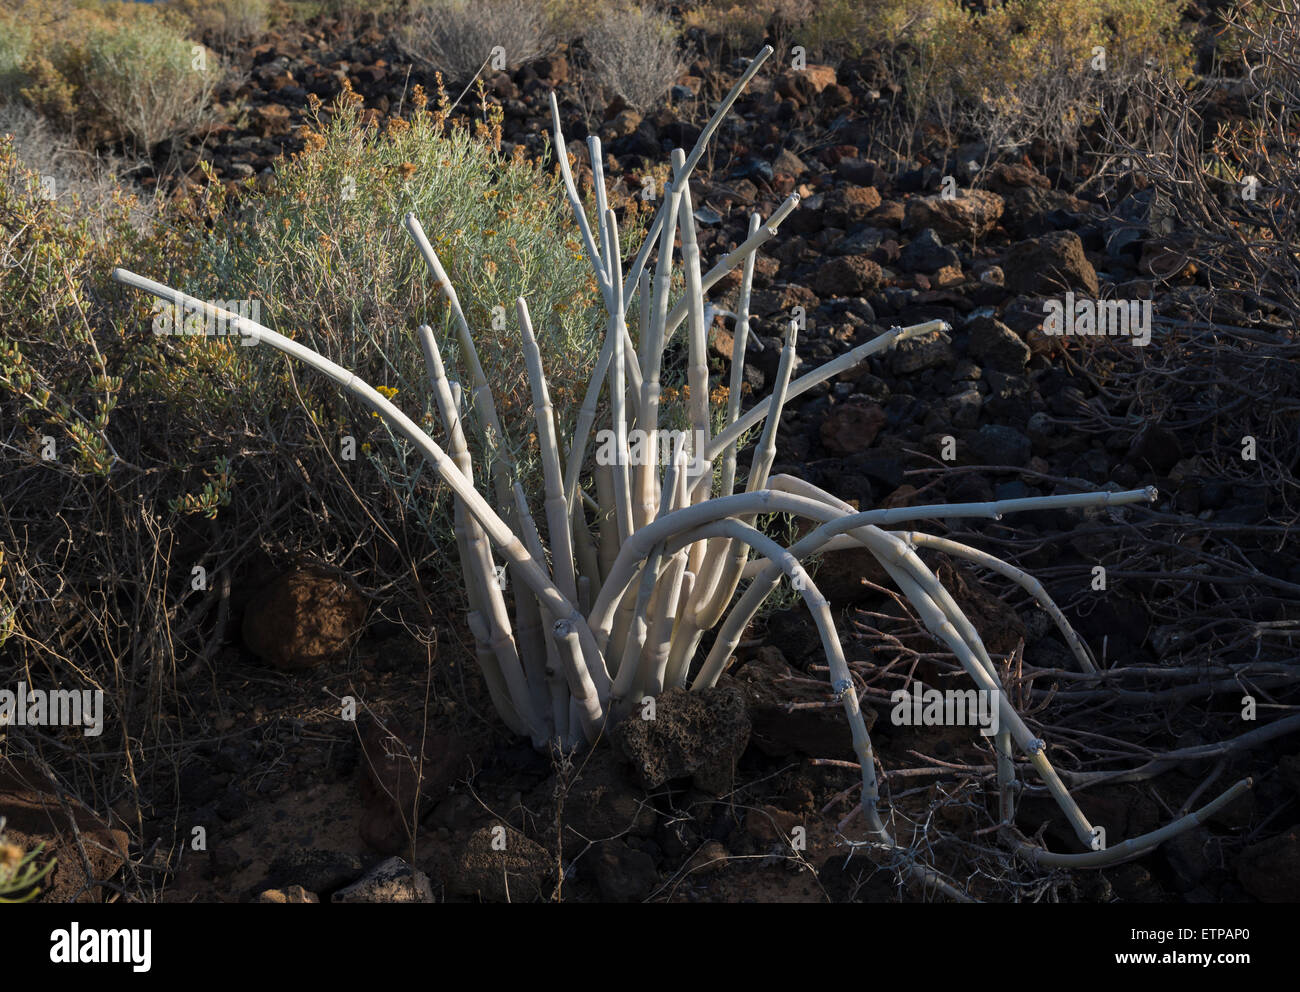 Ceropegia fusca cardoncillo (gris), una planta endémica de Canarias, que crece en las áreas semiáridas de Tenerife y Gran Canaria Foto de stock